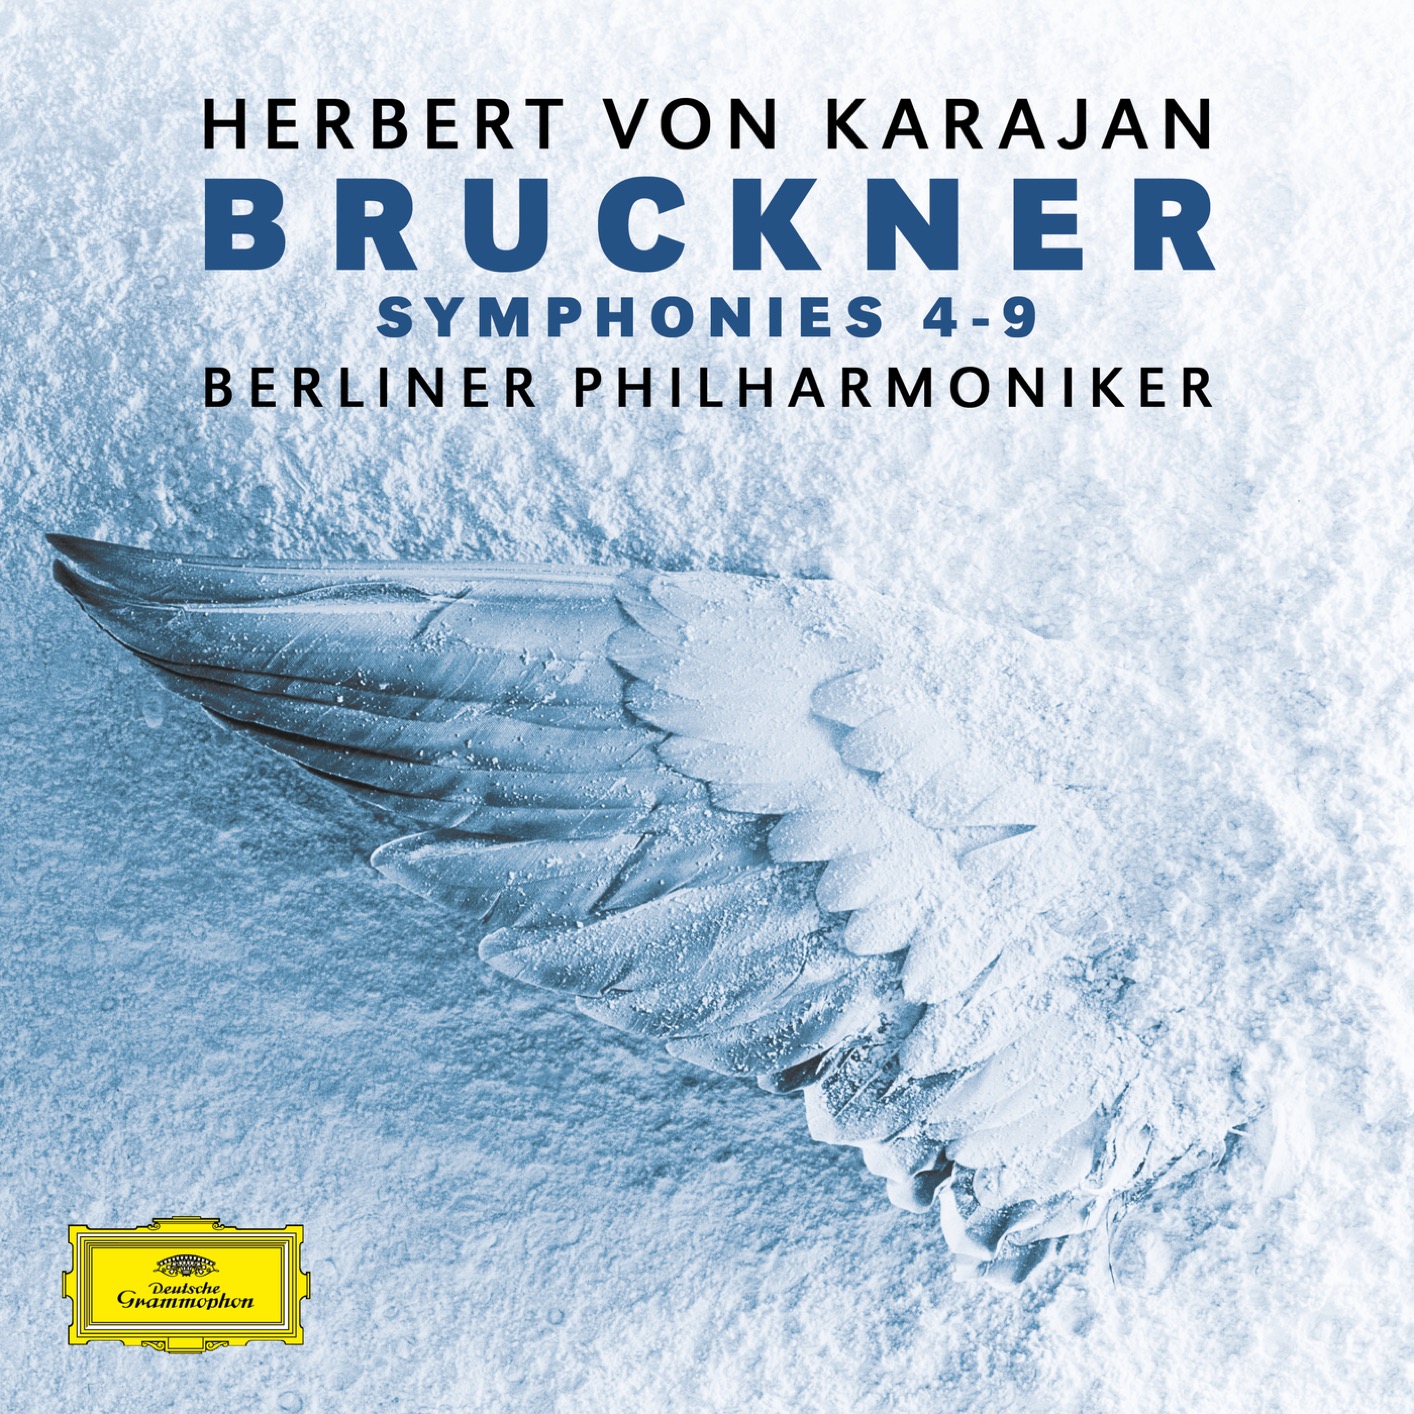 Berliner Philharmoniker & Herbert von Karajan - Bruckner: Symphonies No. 4 - No. 9 (2019) [FLAC 24bit/192kHz]